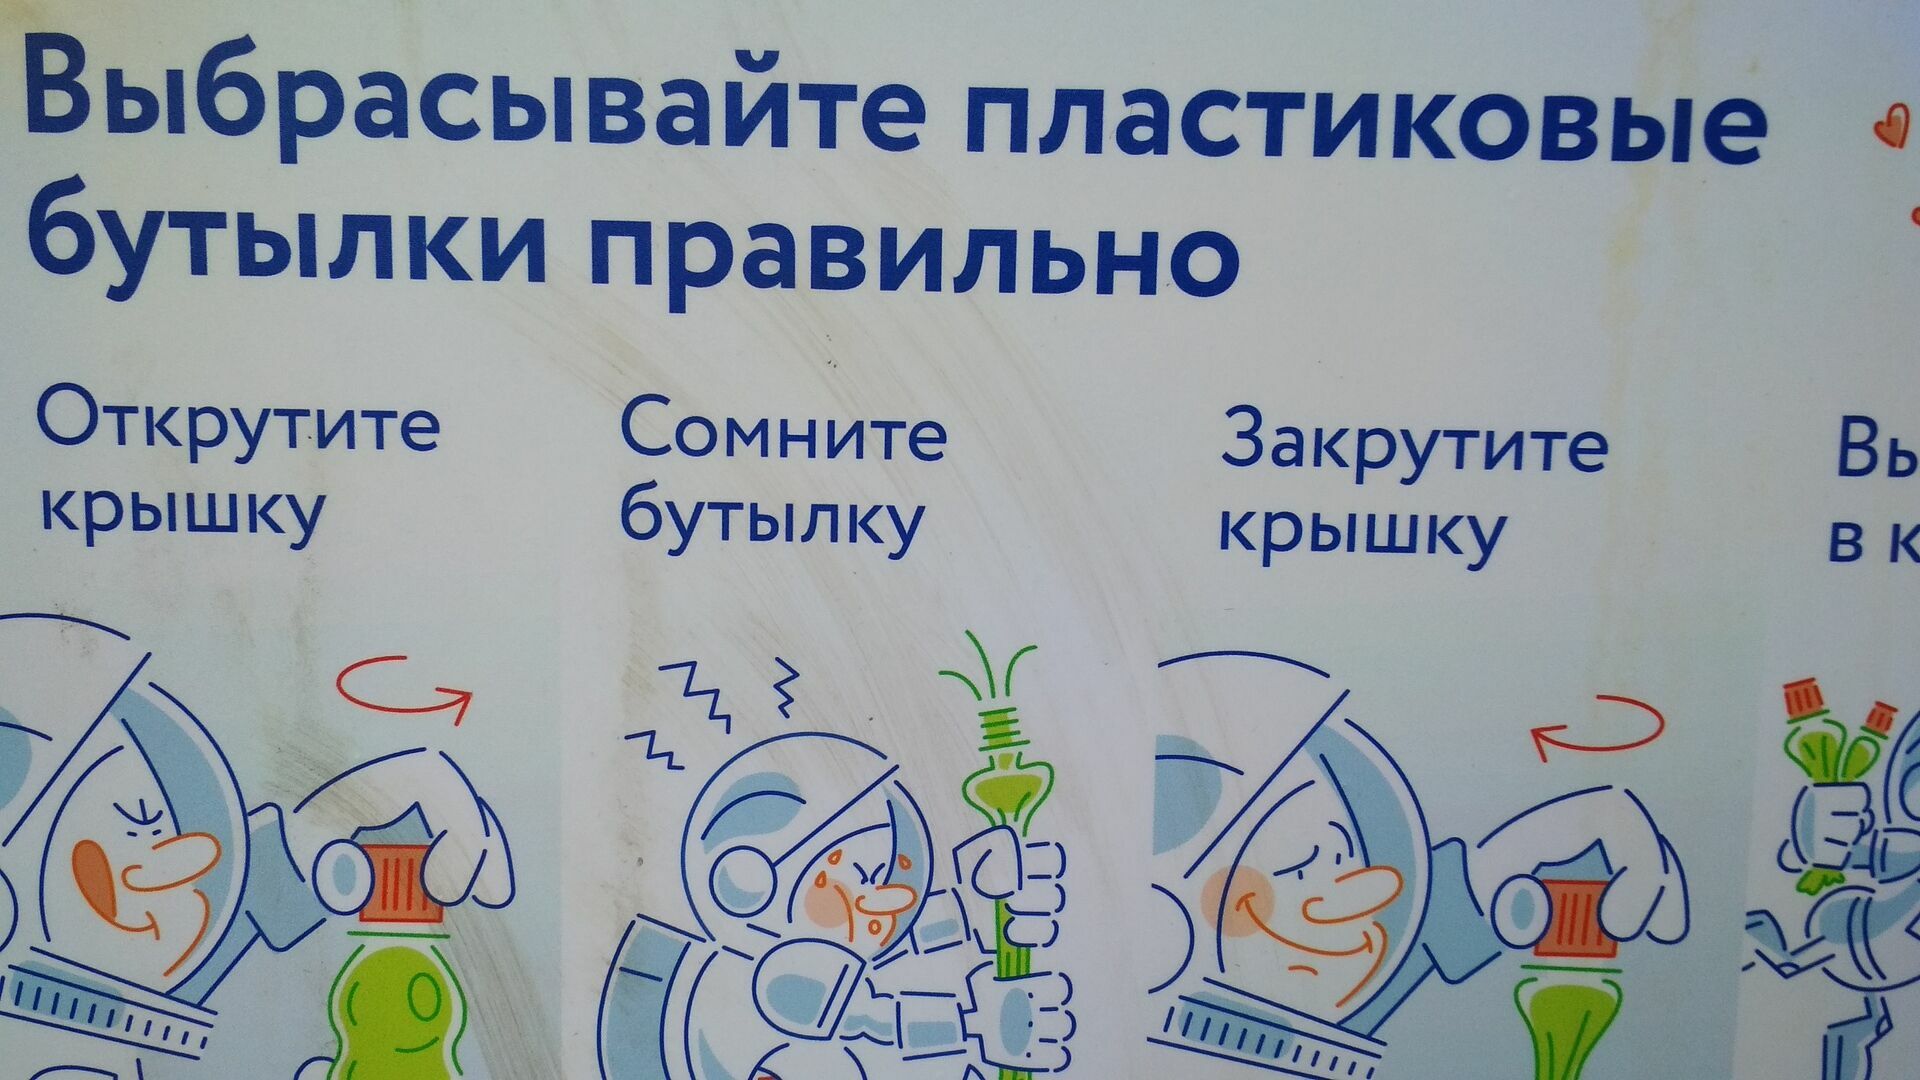 Информационная война за сознательность москвичей уже началась: москвич в ней изображен в космическом скафандре